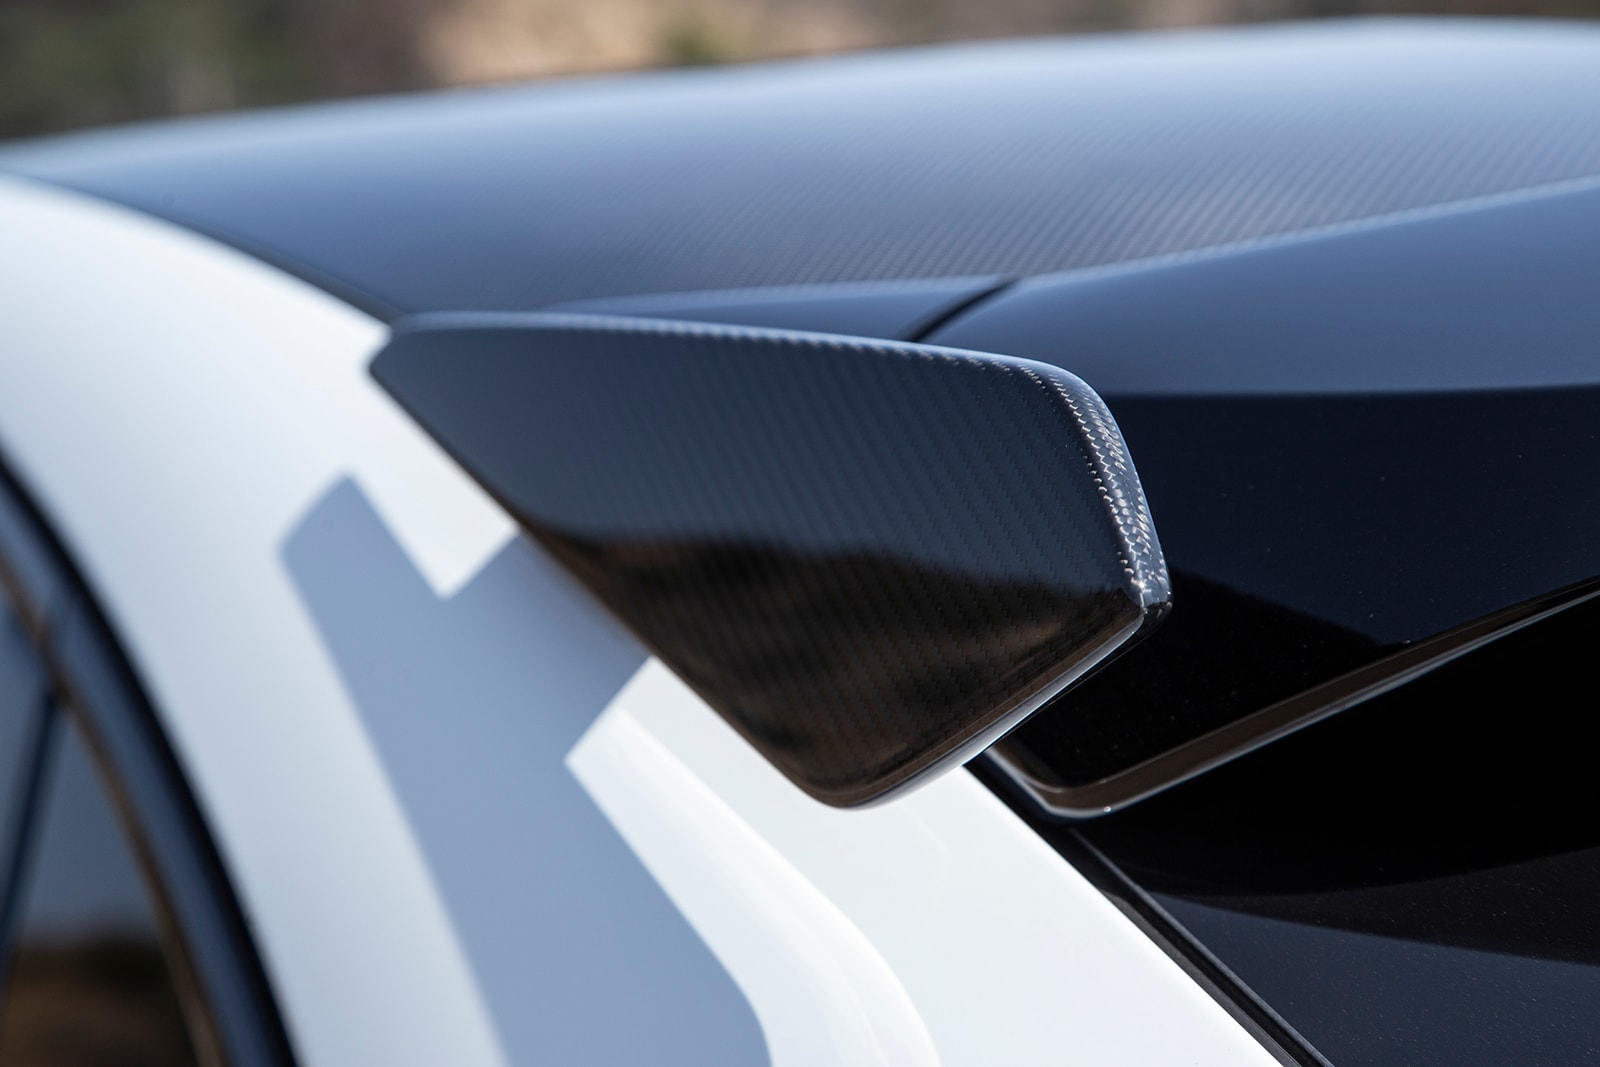 ポルシェが史上最速を謳う新型 SUV カイエンターボ GTを発表 Porsche Cayenne Turbo GT Early Look and Review Super SUV Lamborghini Lambo Urus Audi RSQ8 BMW X5 X6 M